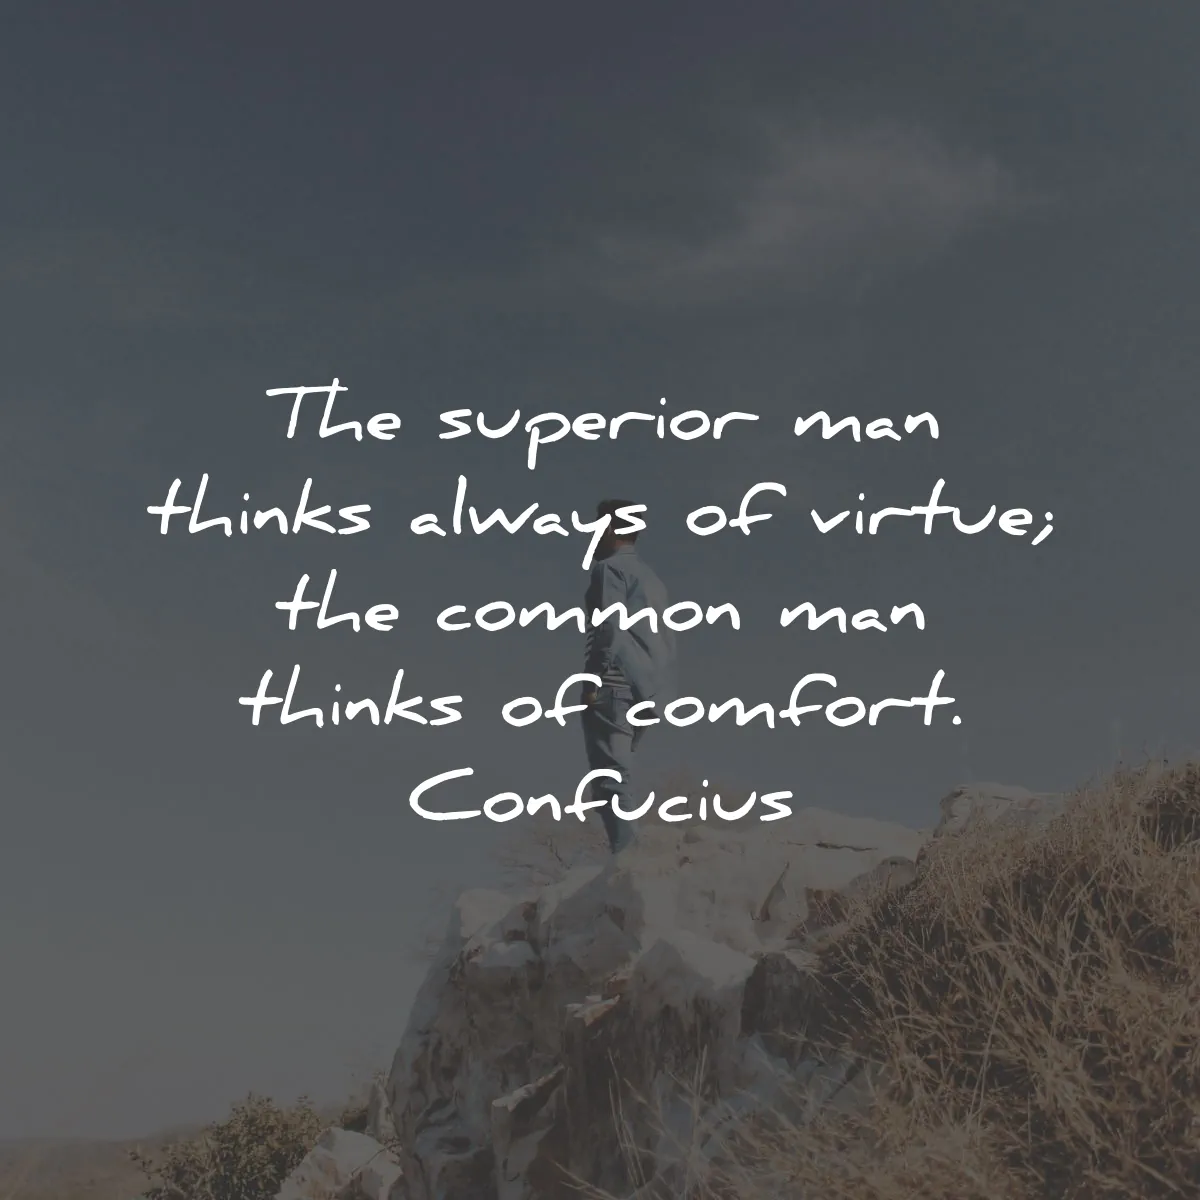 confucius quotes superior man virtue comfort wisdom